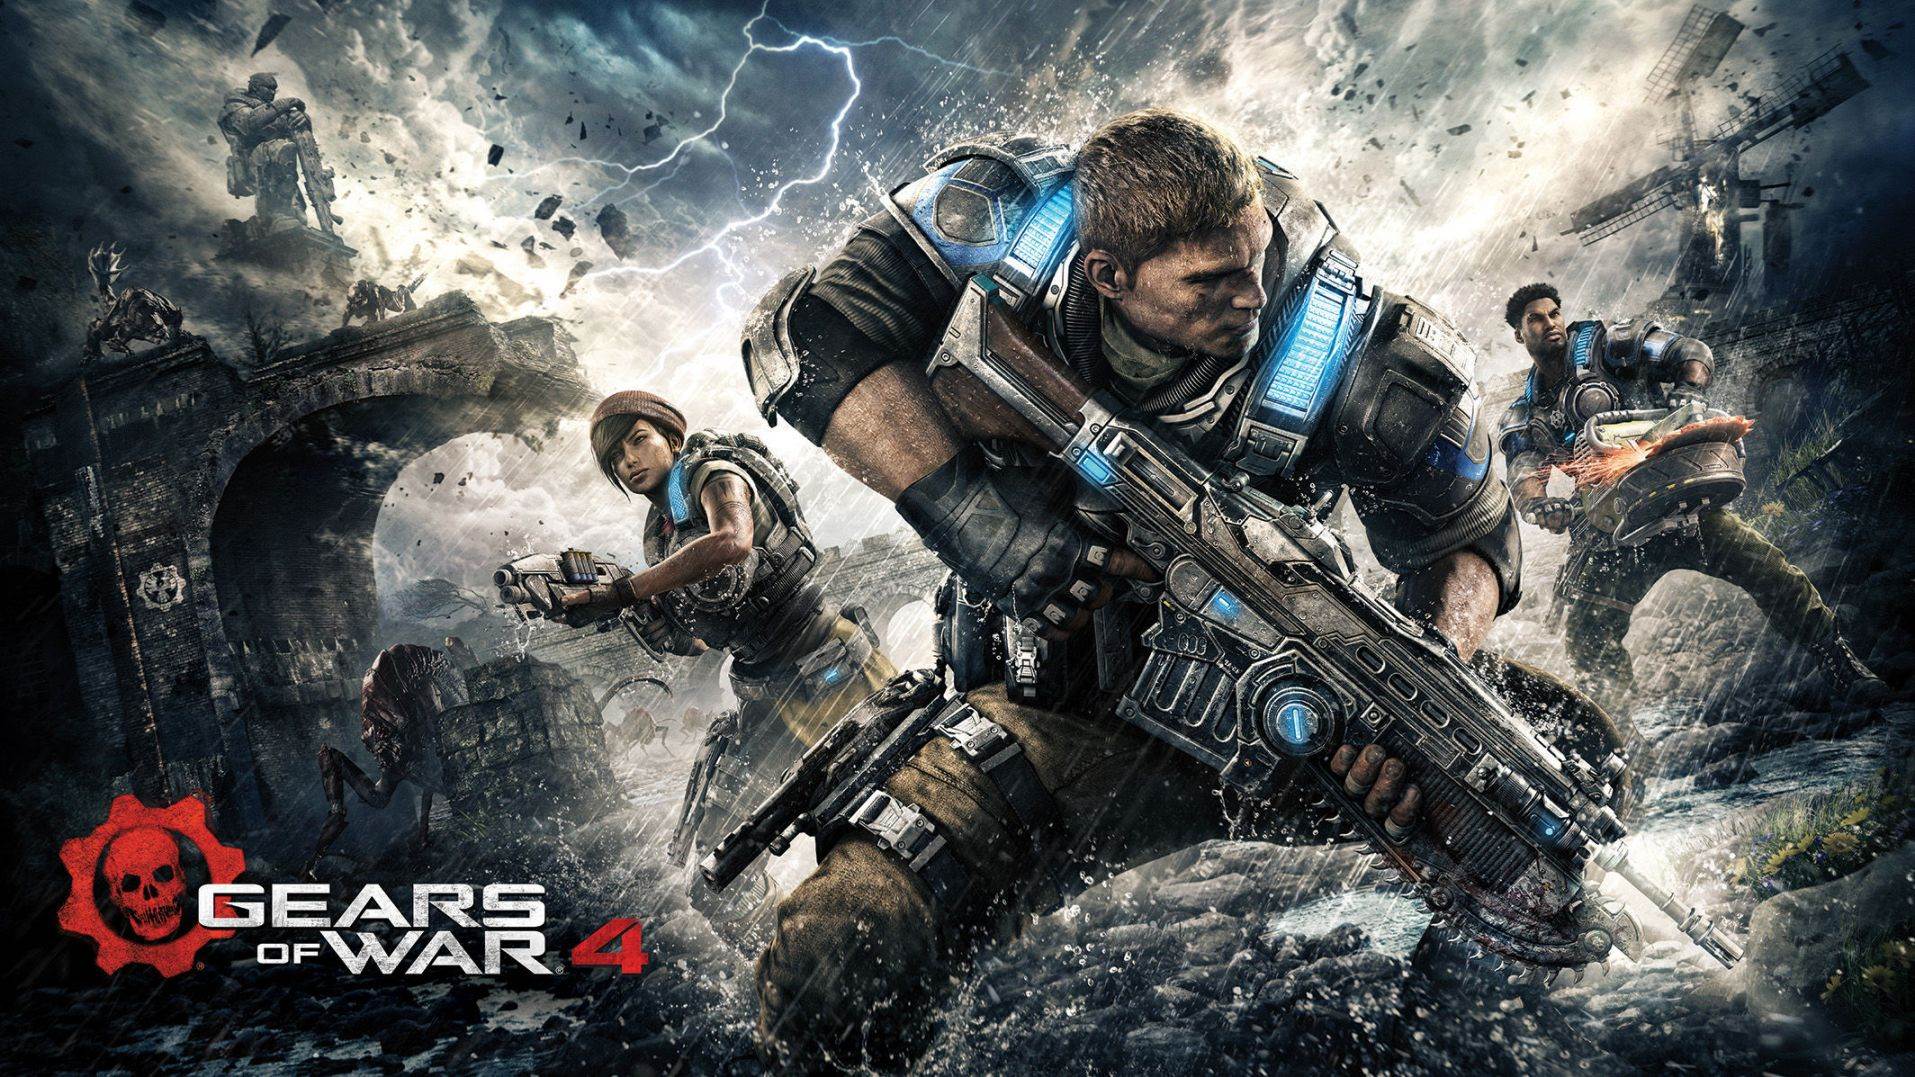 Dwa ekskluzywne filmy z Gears of War 4: mapa “Gridlock” oraz rozgrywka w trybie “Strażnik”!